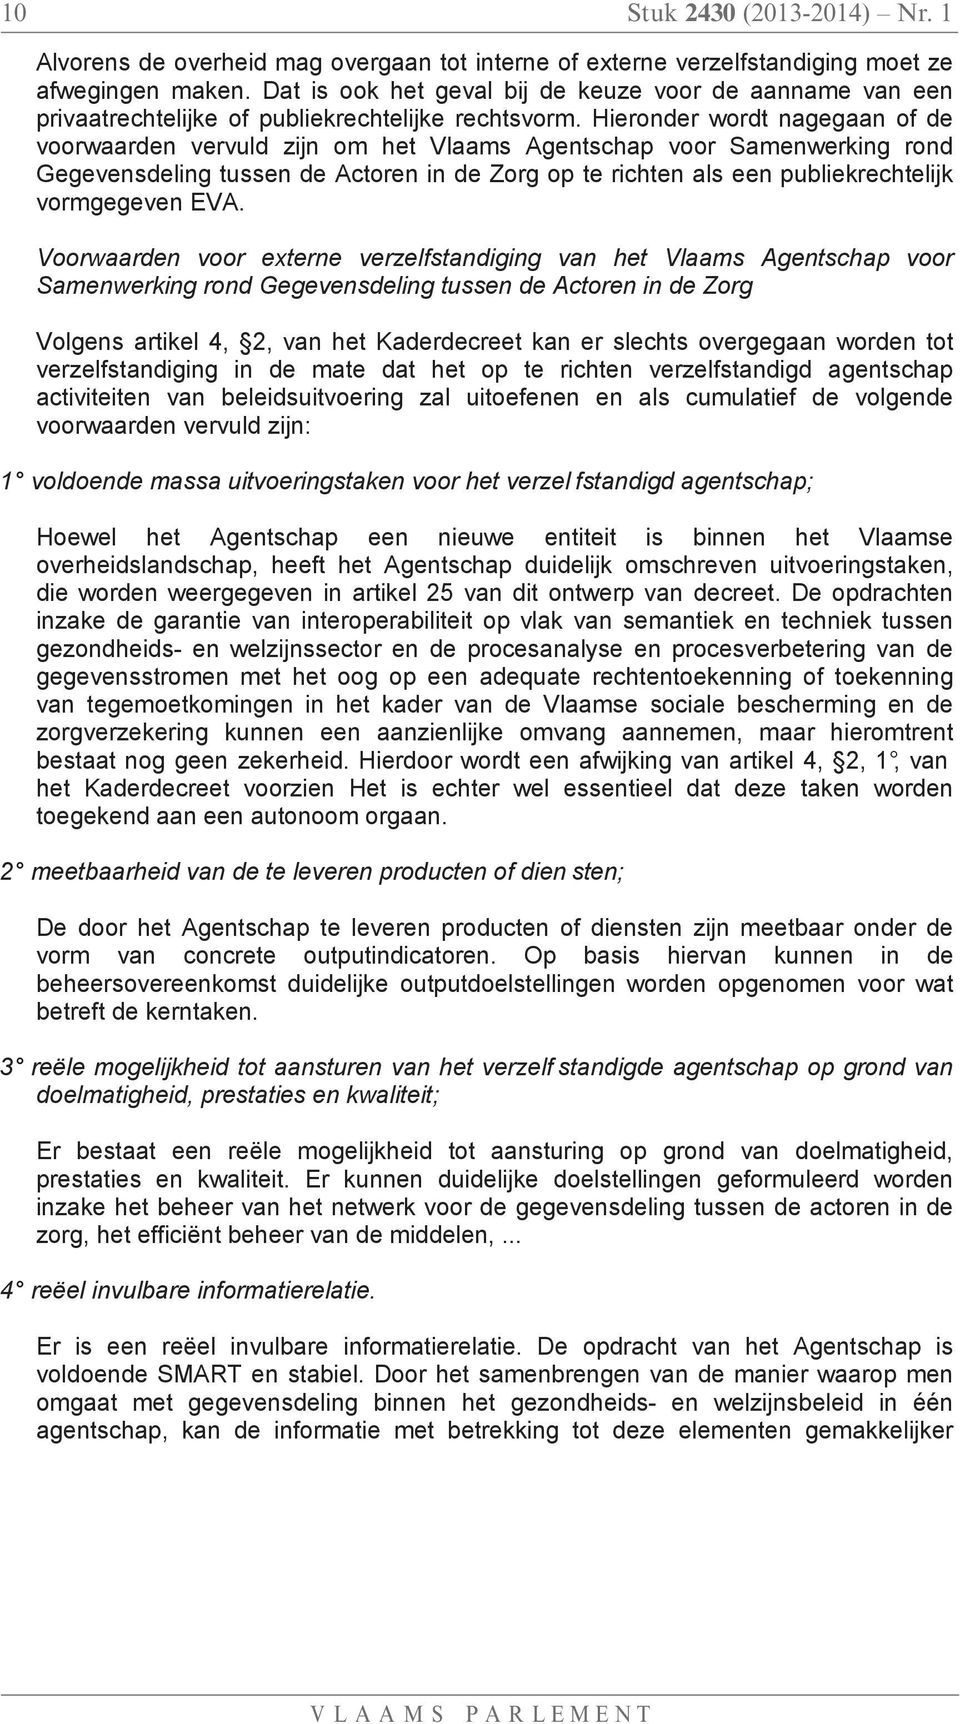 Hieronder wordt nagegaan of de voorwaarden vervuld zijn om het Vlaams Agentschap voor Samenwerking rond Gegevensdeling tussen de Actoren in de Zorg op te richten als een publiekrechtelijk vormgegeven